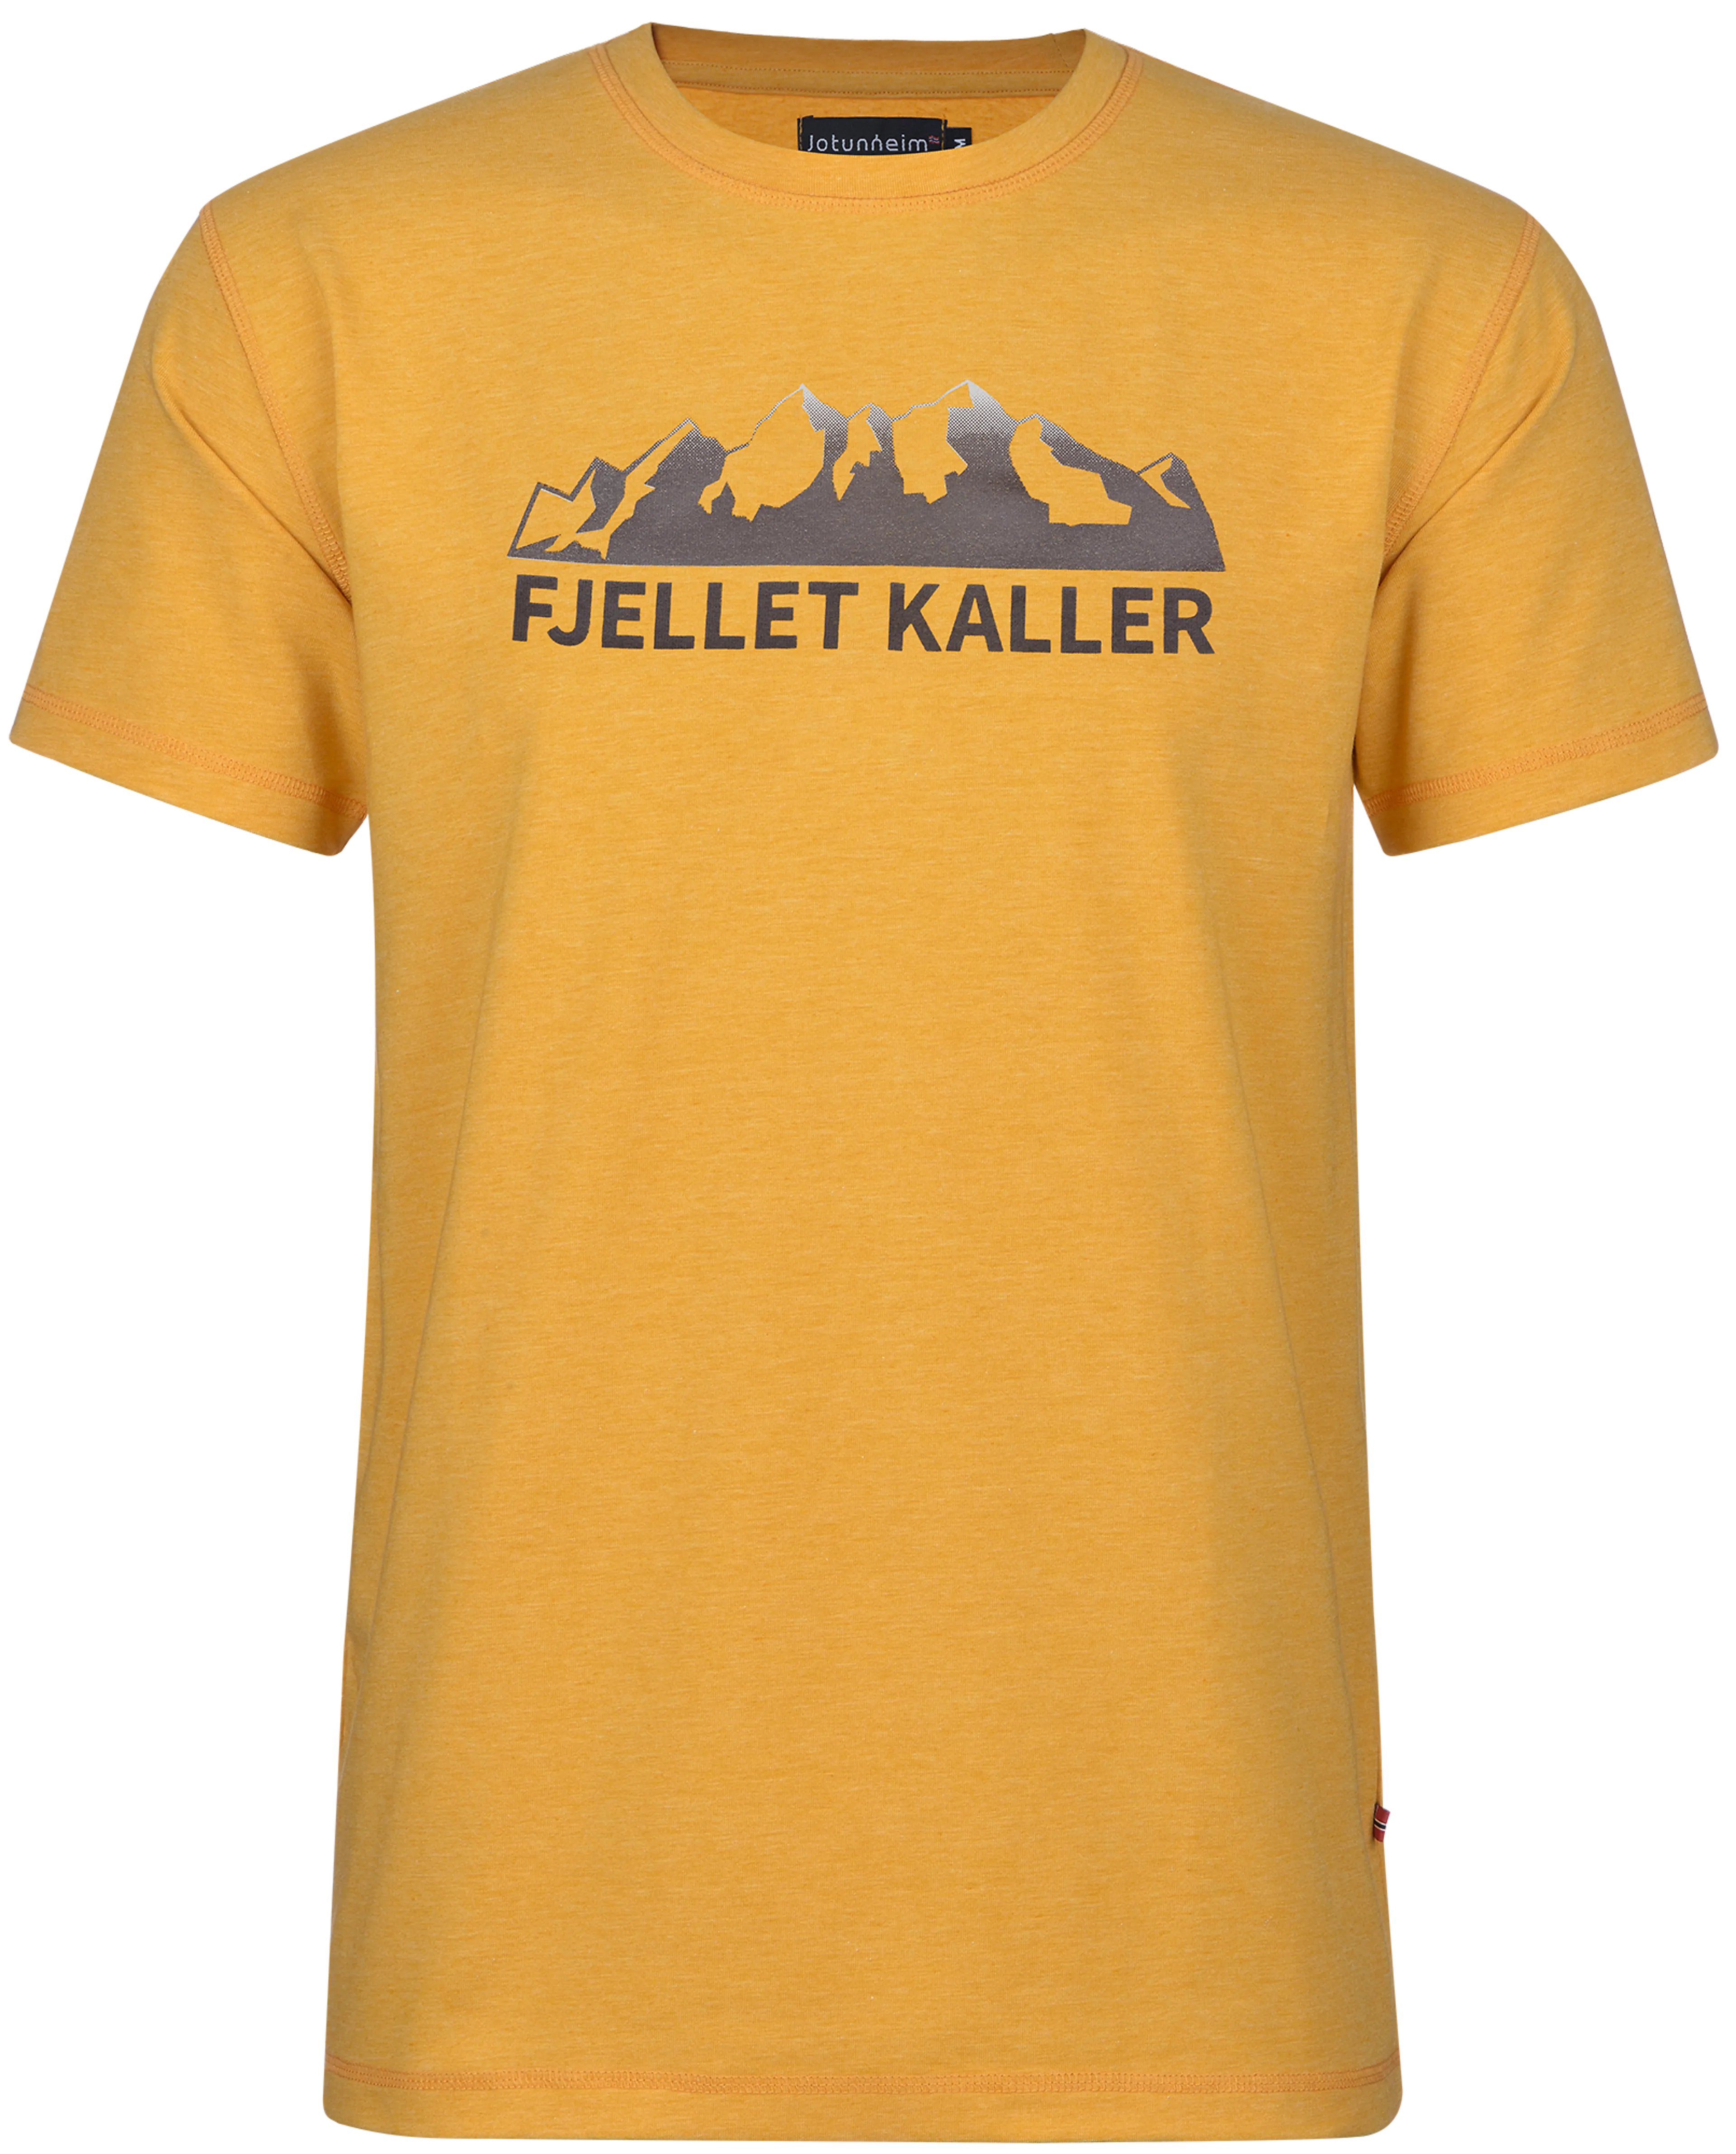 Kaller/Golden Yellow